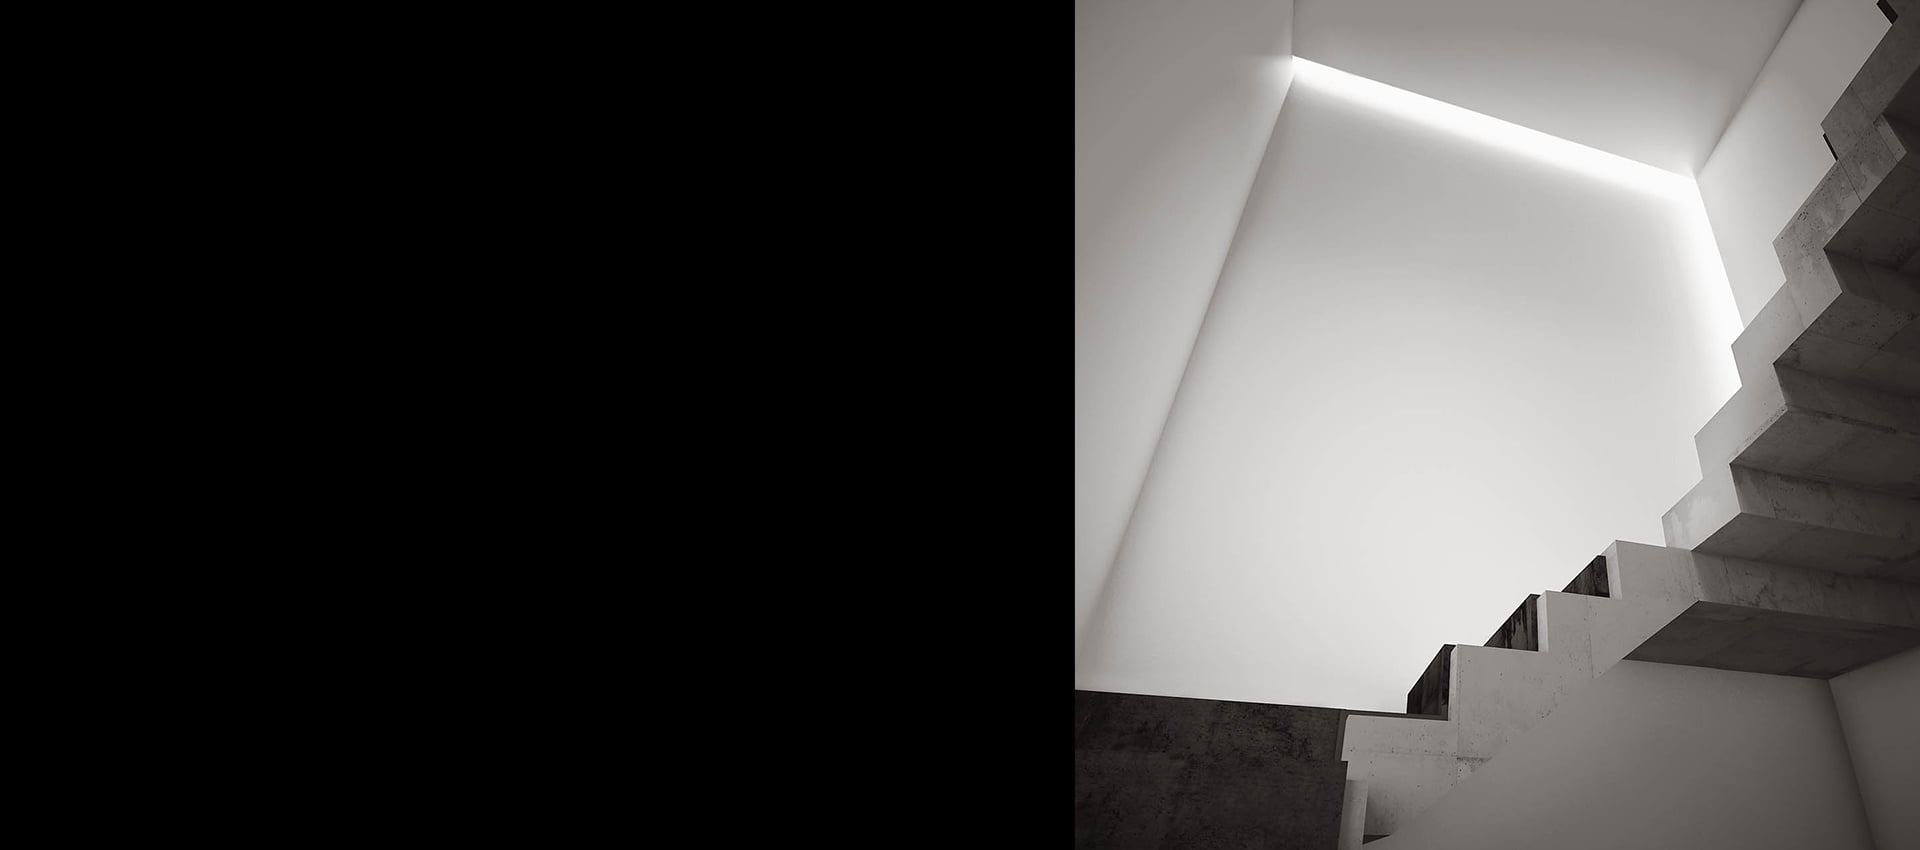 Profil LED iluminat arhitectural interior scari Macrolux